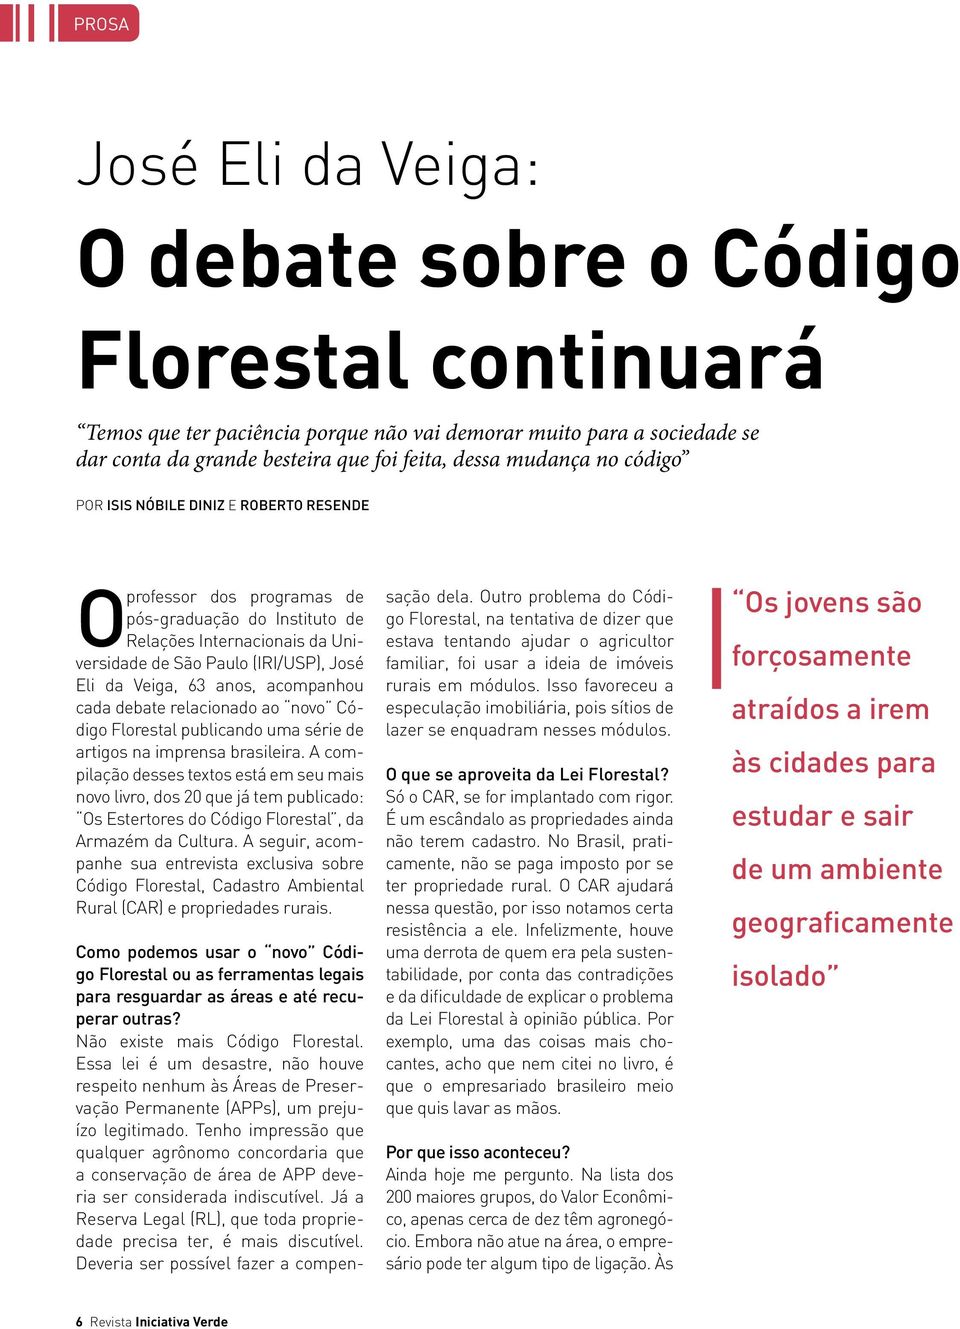 63 anos, acompanhou cada debate relacionado ao novo Código Florestal publicando uma série de artigos na imprensa brasileira.